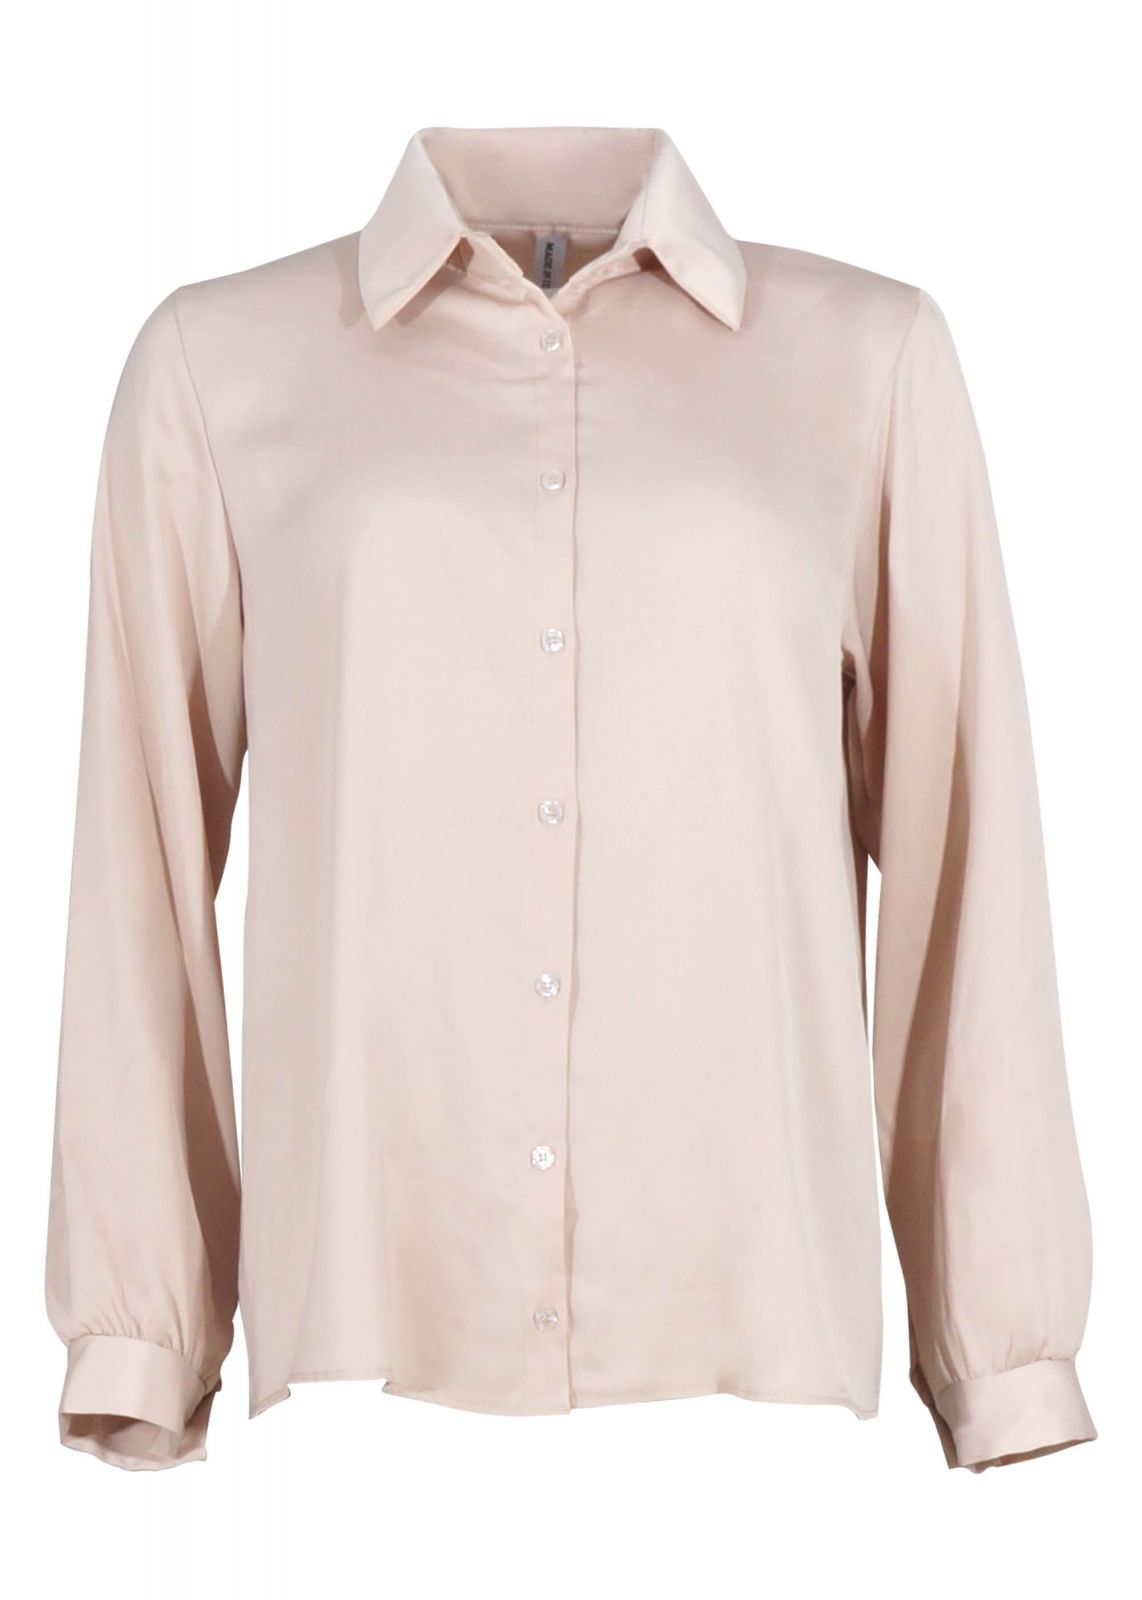 Γυναικείο πουκάμισο με κουμπιά υφή saten. ΜΠΕΖ 3253-18234